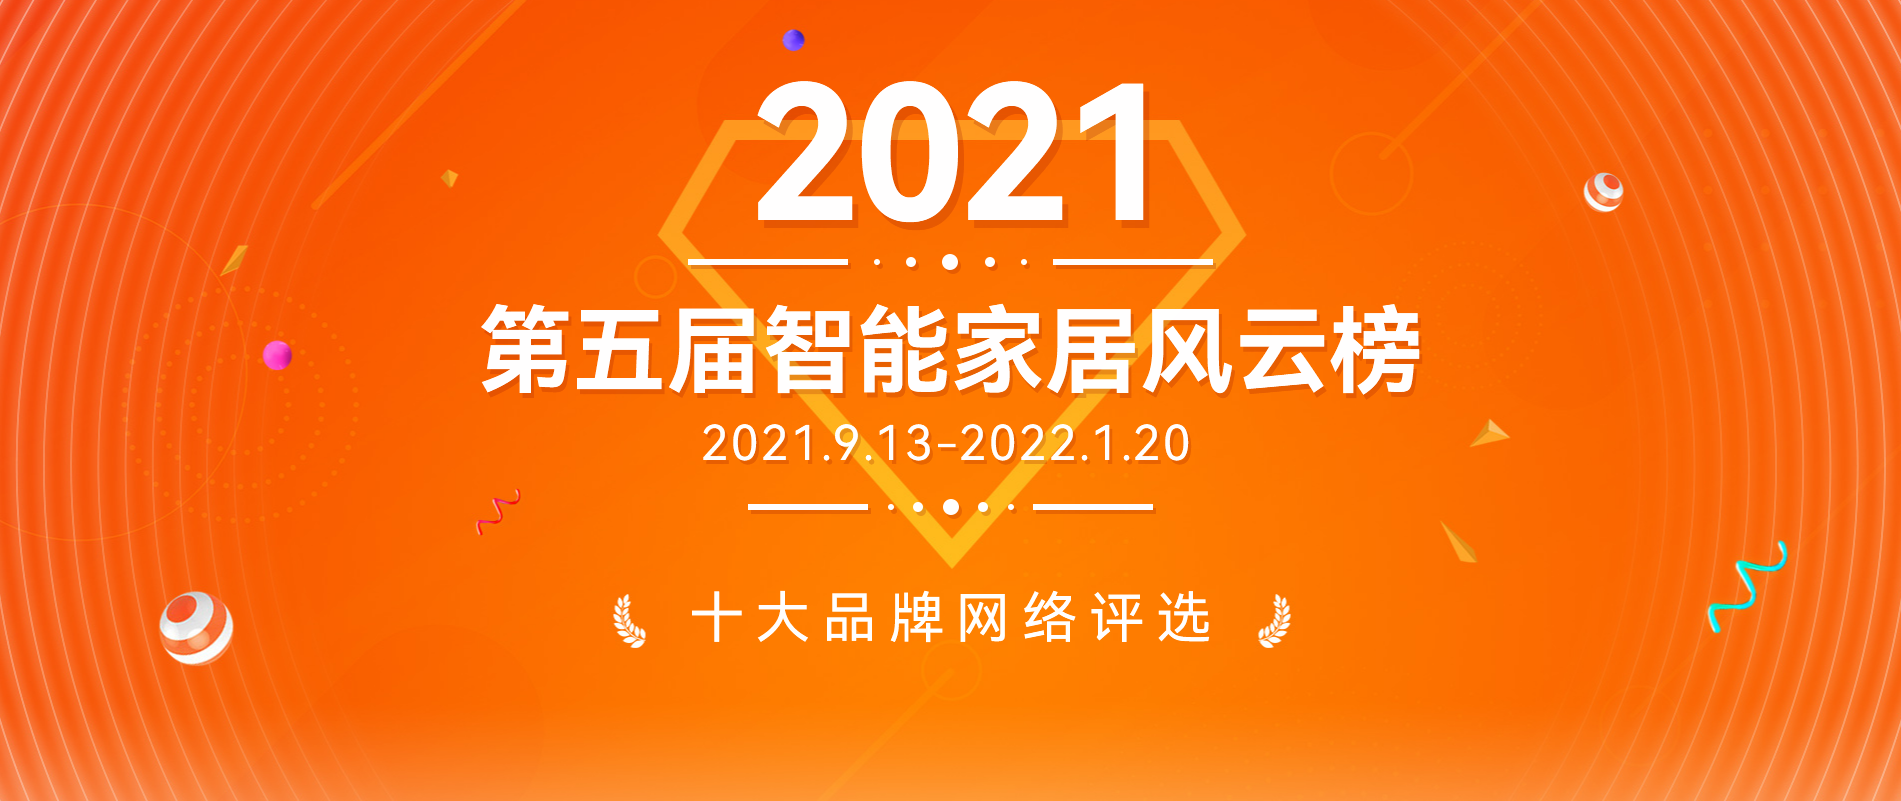 2021第五屆智能家居行業風云榜